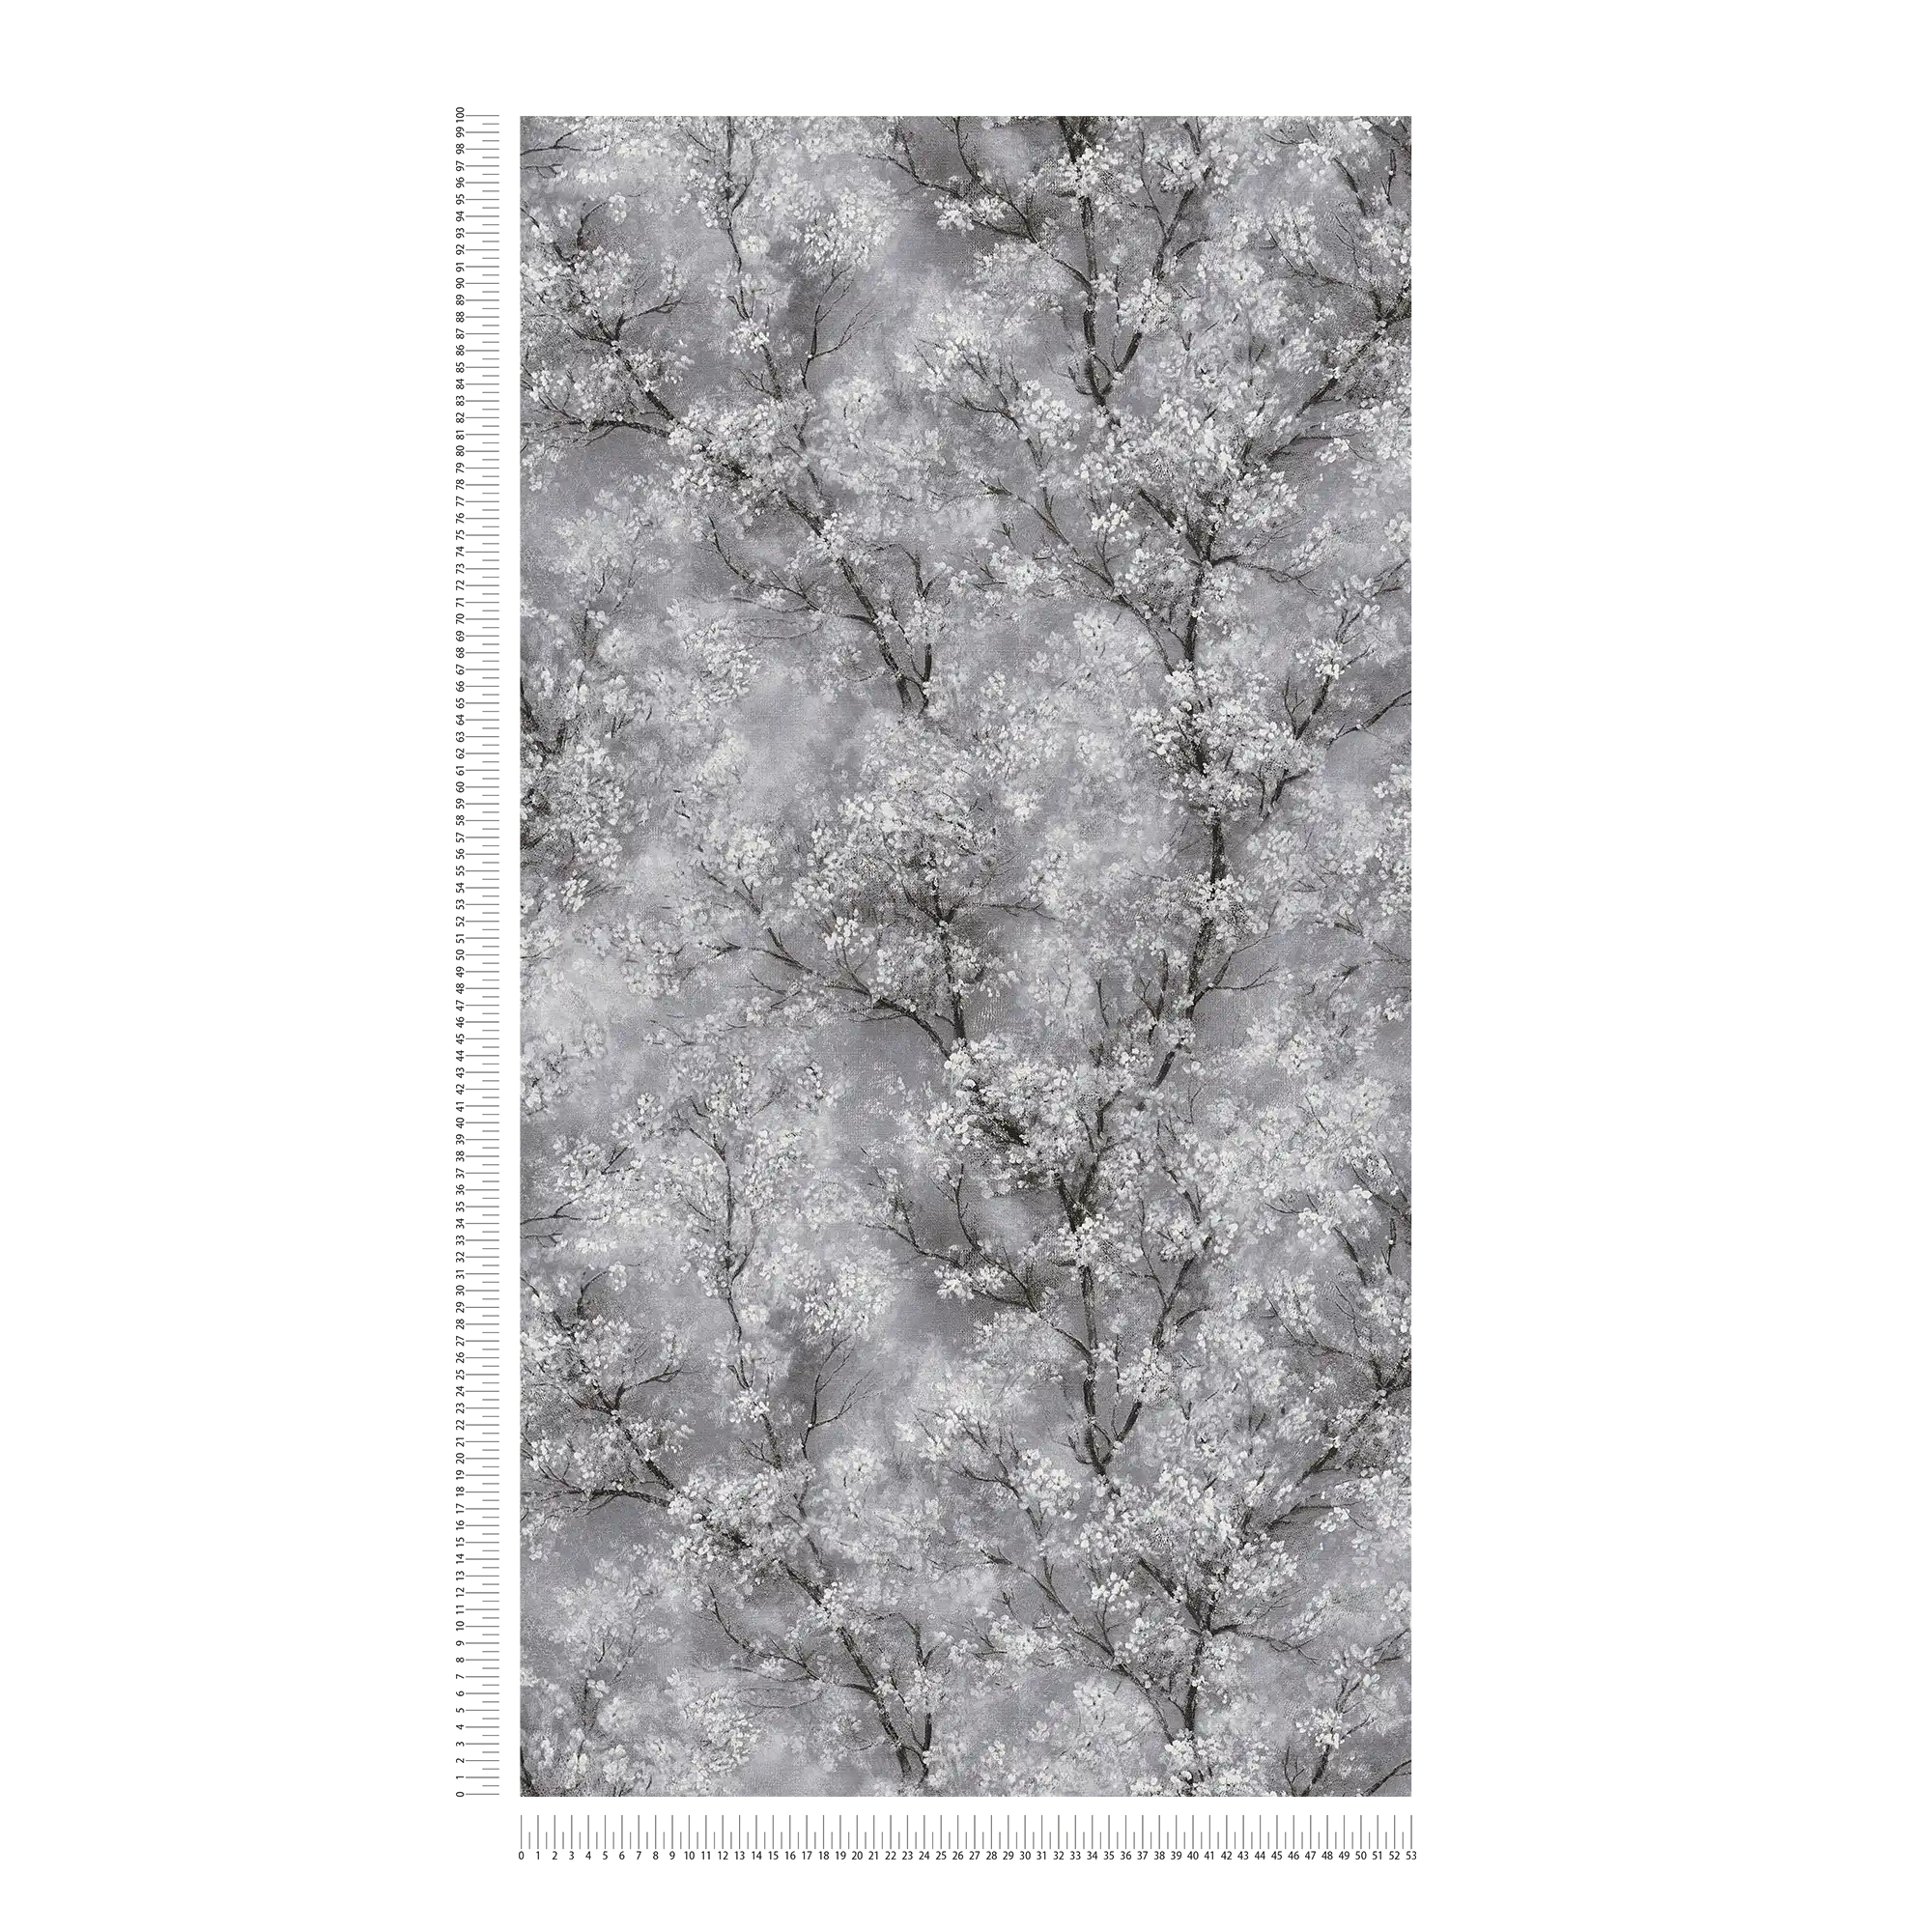             behang kersenbloesem glitter effect - grijs, zwart, wit
        